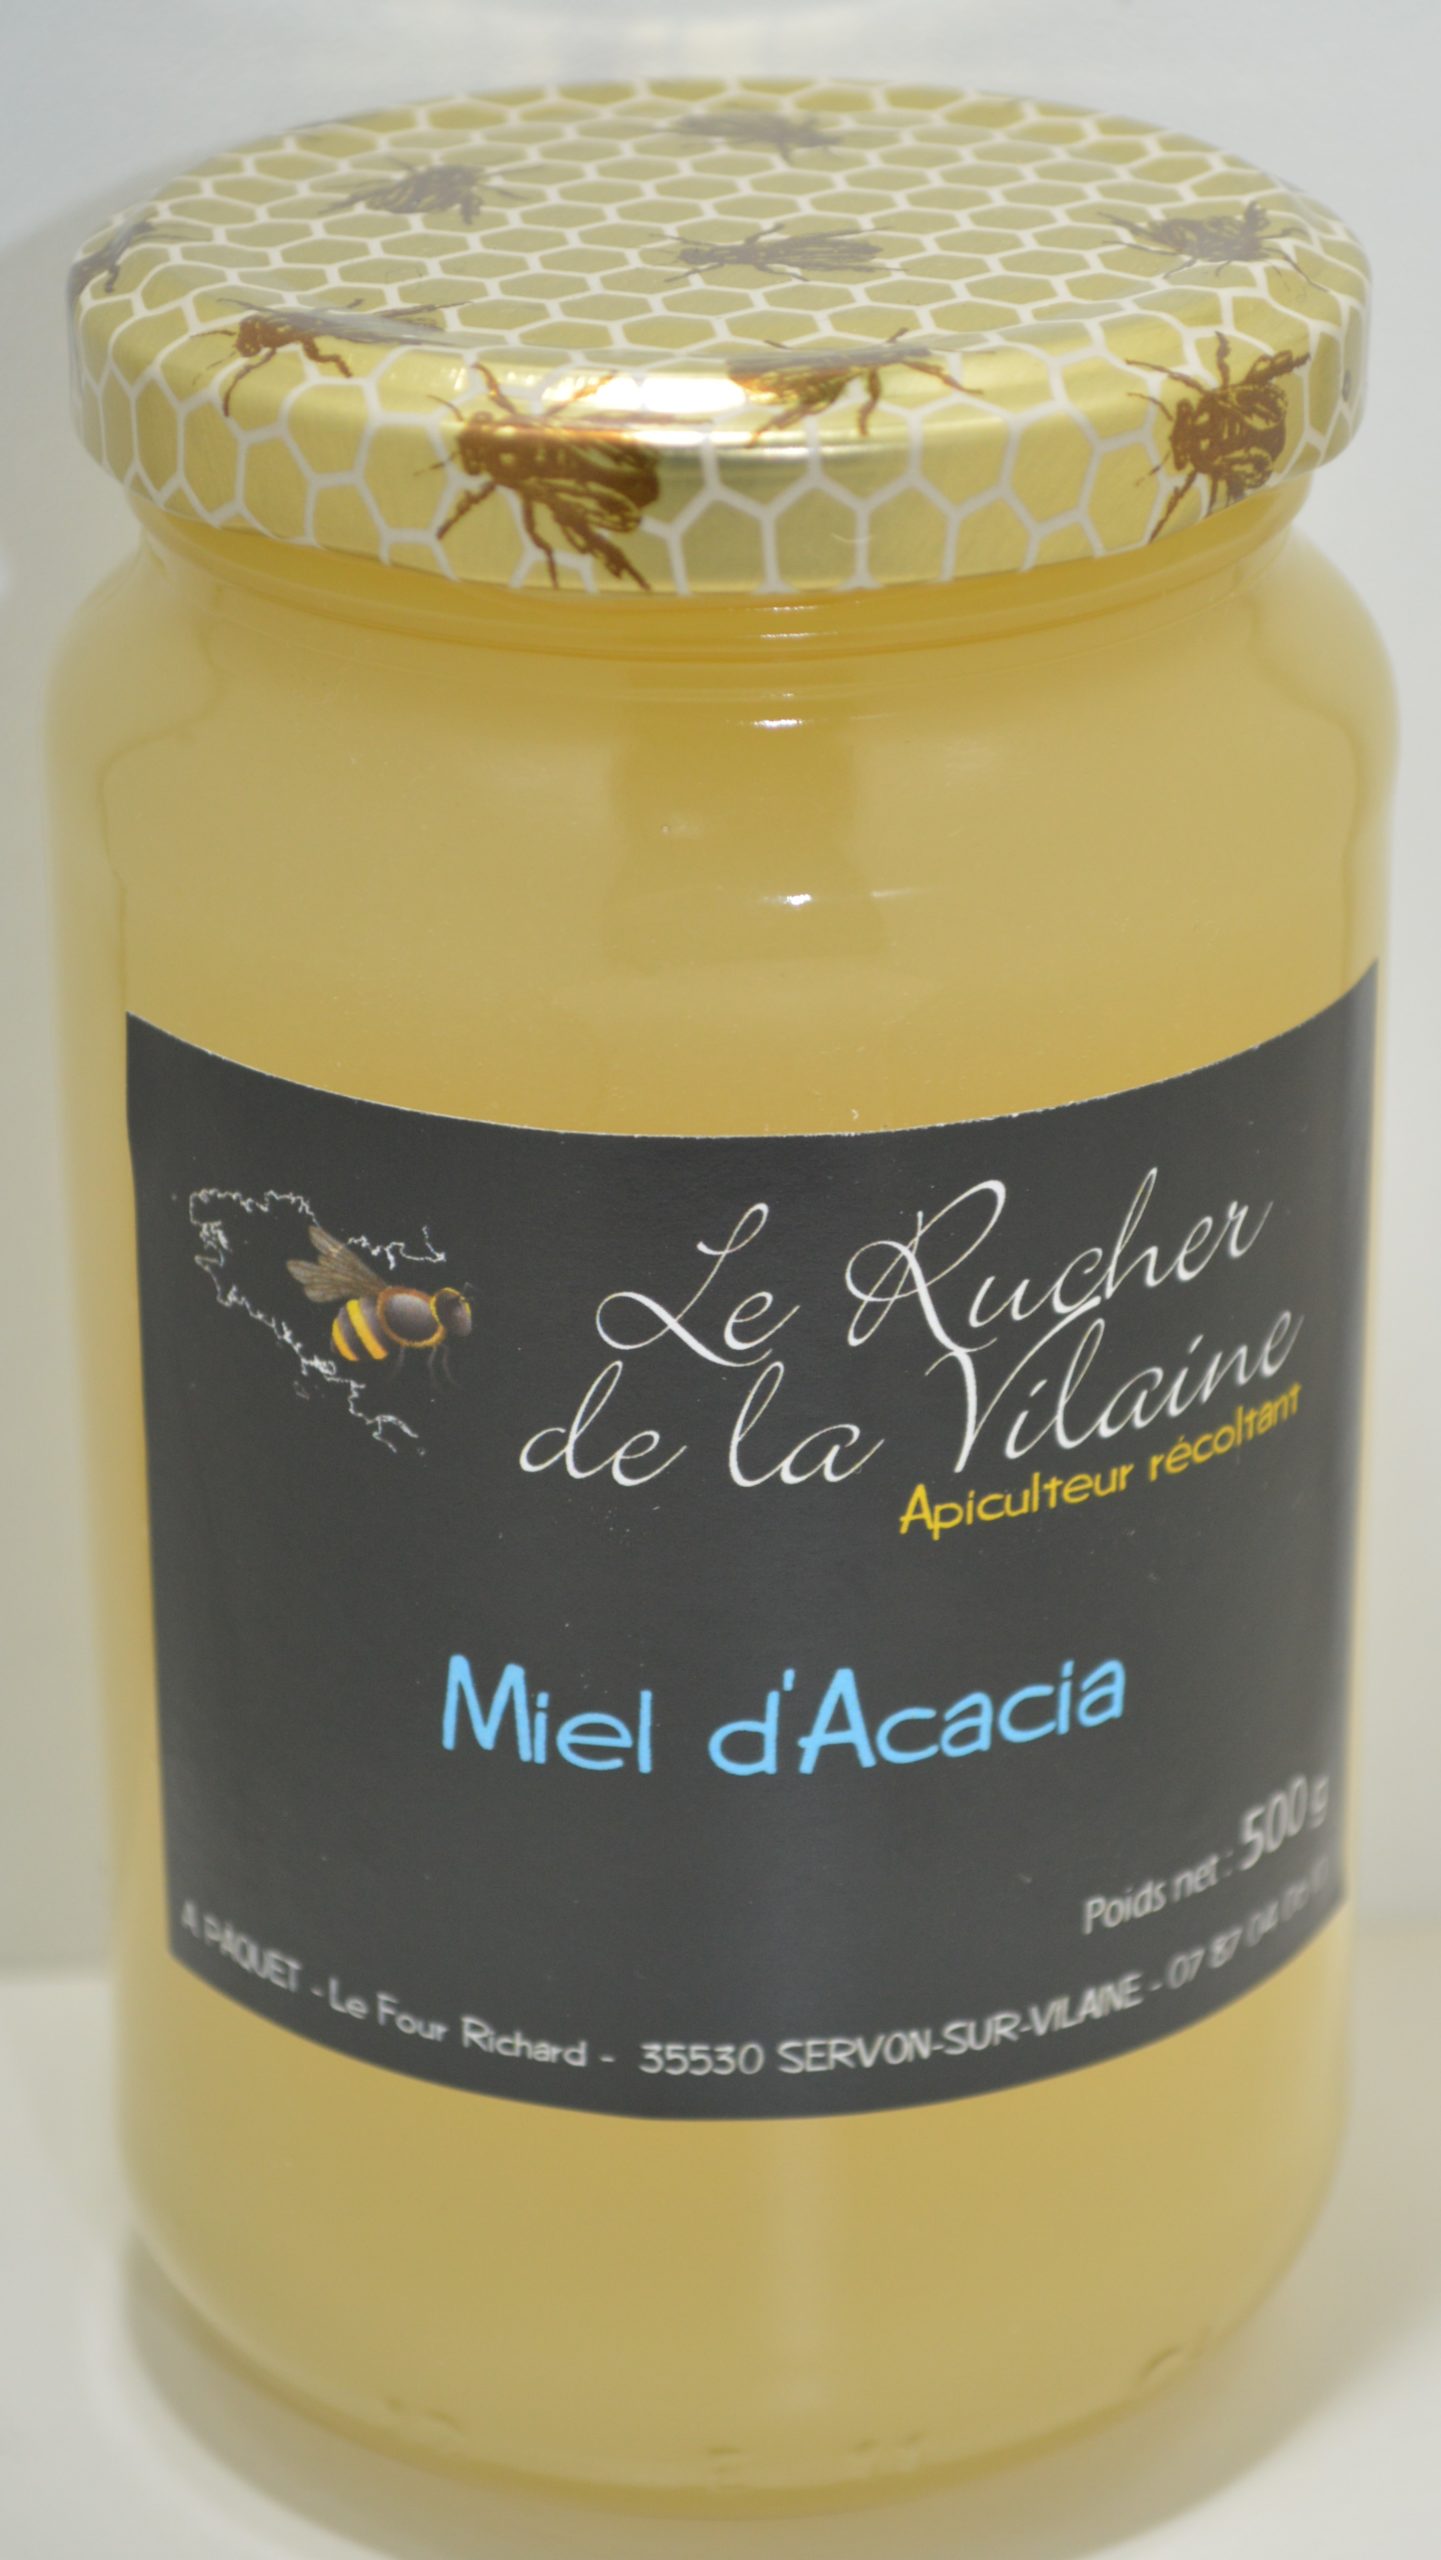 Miel d'Acacia Le Rucher de la Vilaine 500g